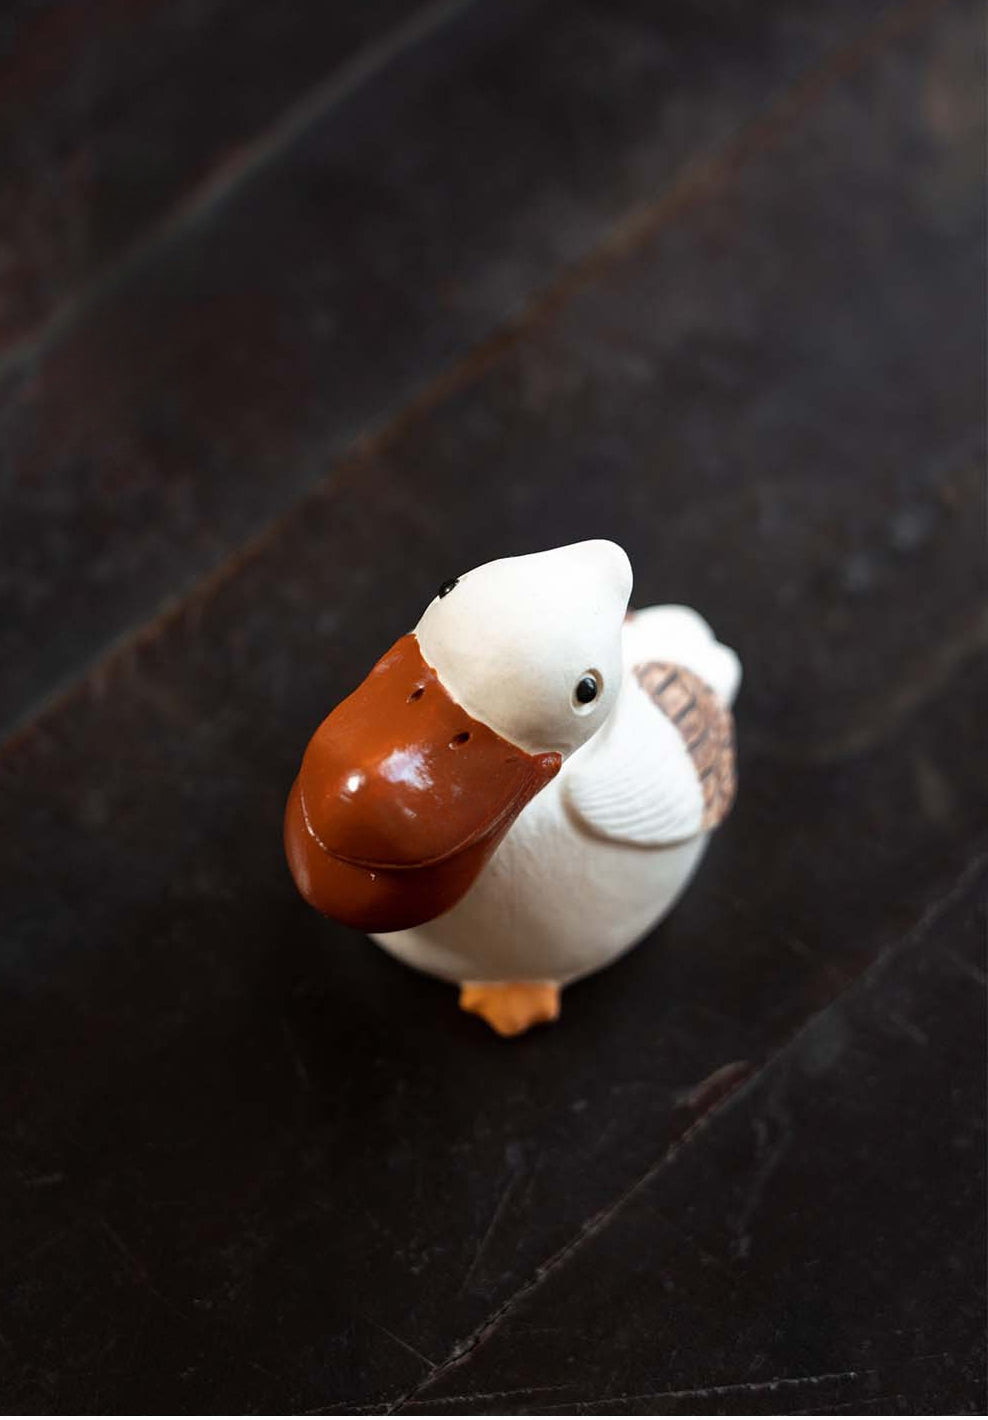 Gohobi Handmade Ceramic YiXing Clay Pelican Ornament Tea pet